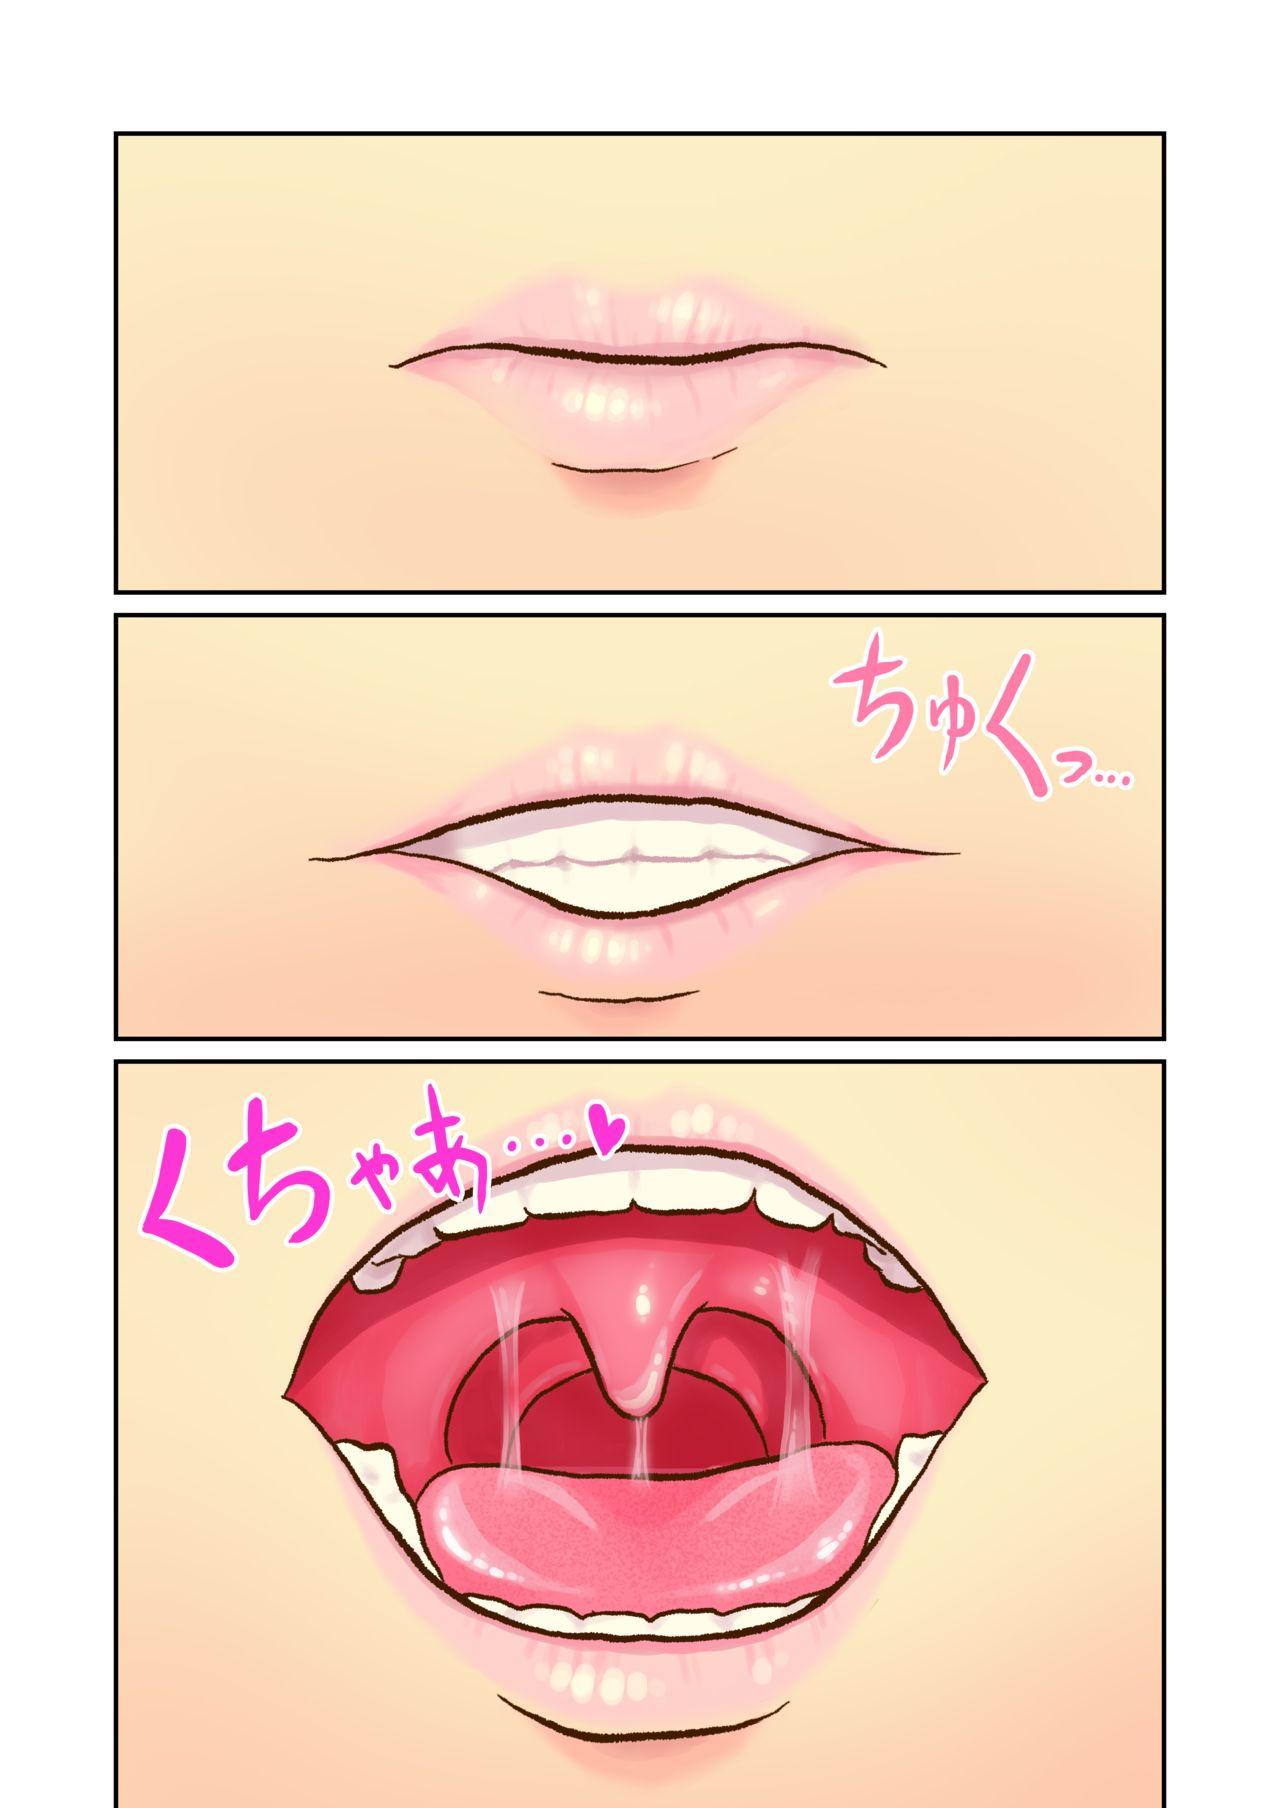 Sexo Marunomi Feti no Tsundere Musume ga Nettori to Marunomi shite kureru Manga - Original Chilena - Page 3